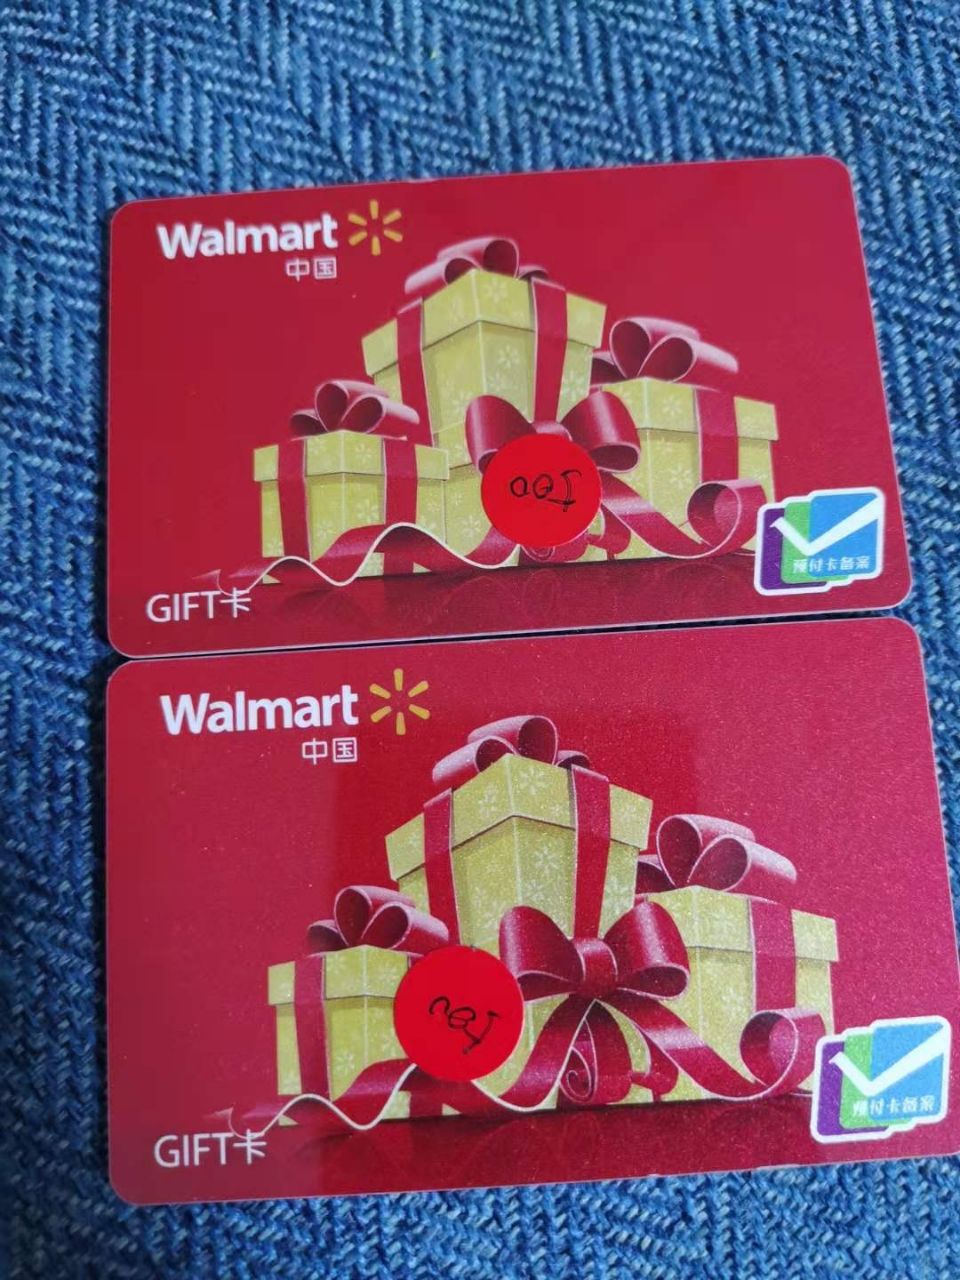 卡 沃尔玛gift商超购物卡 全国沃尔玛超市通用 节日送礼佳品500面值